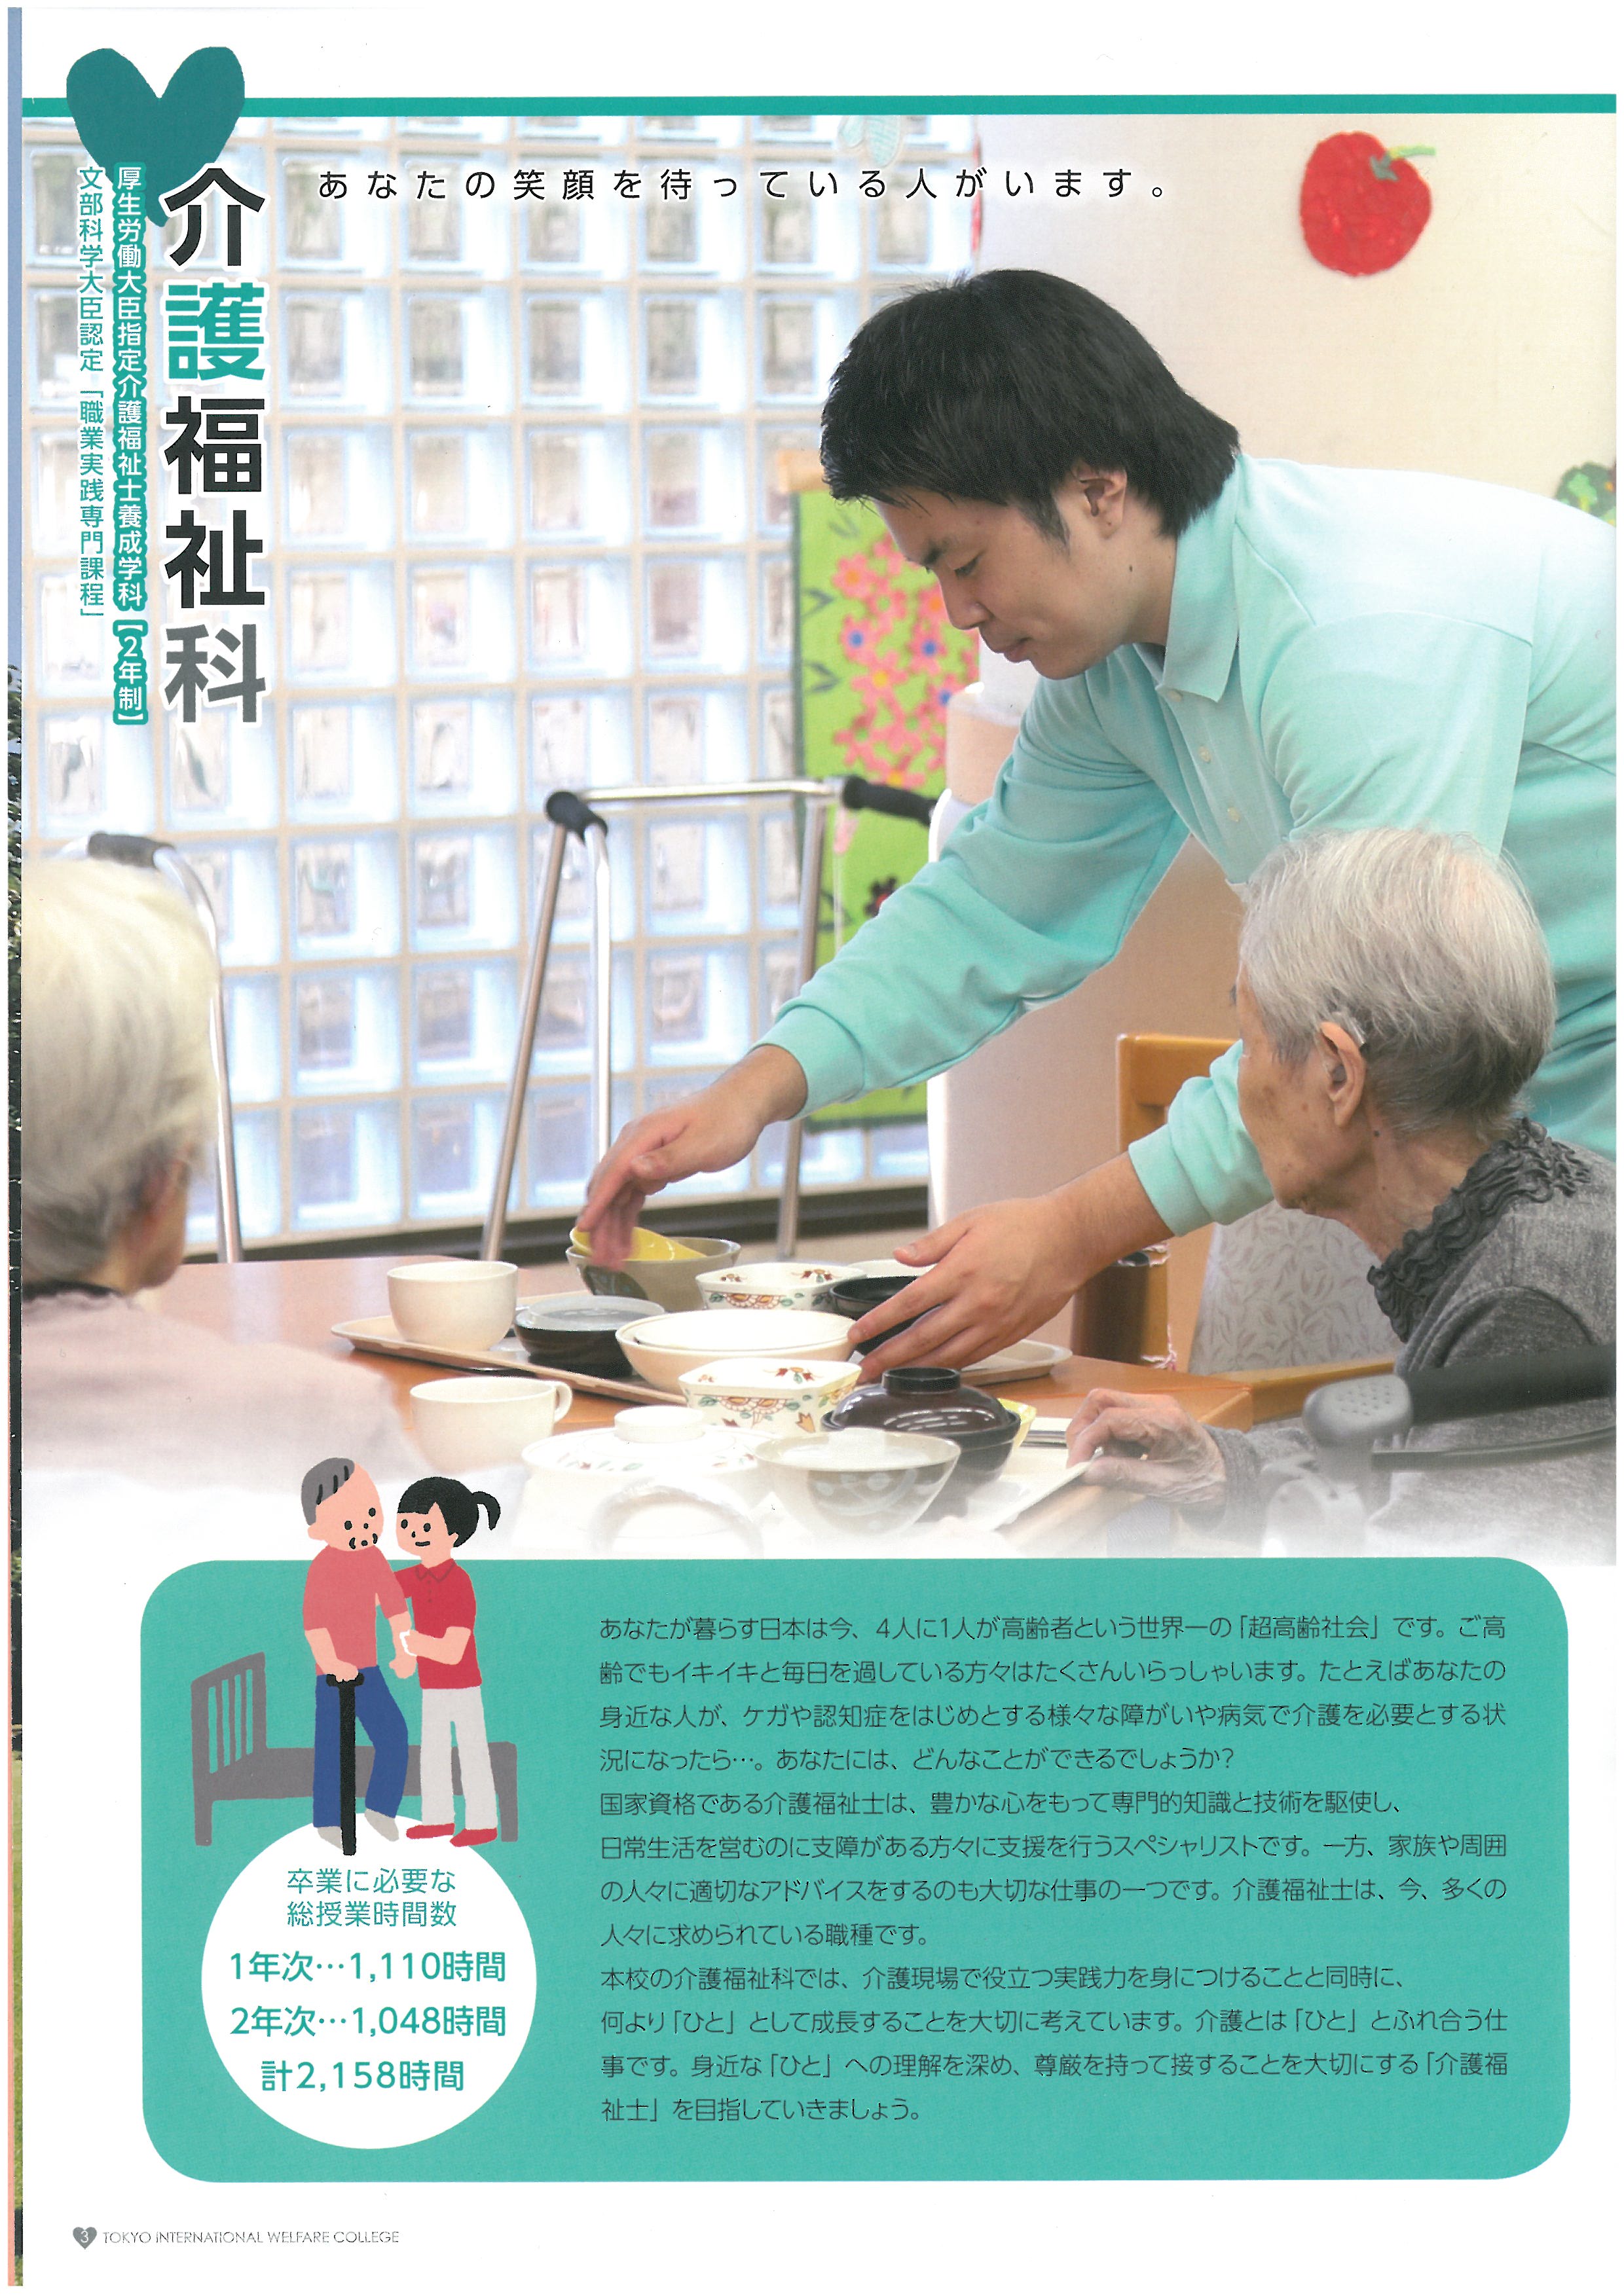 도쿄 국제복지전문학교 홍보 팜플렛 04.jpg